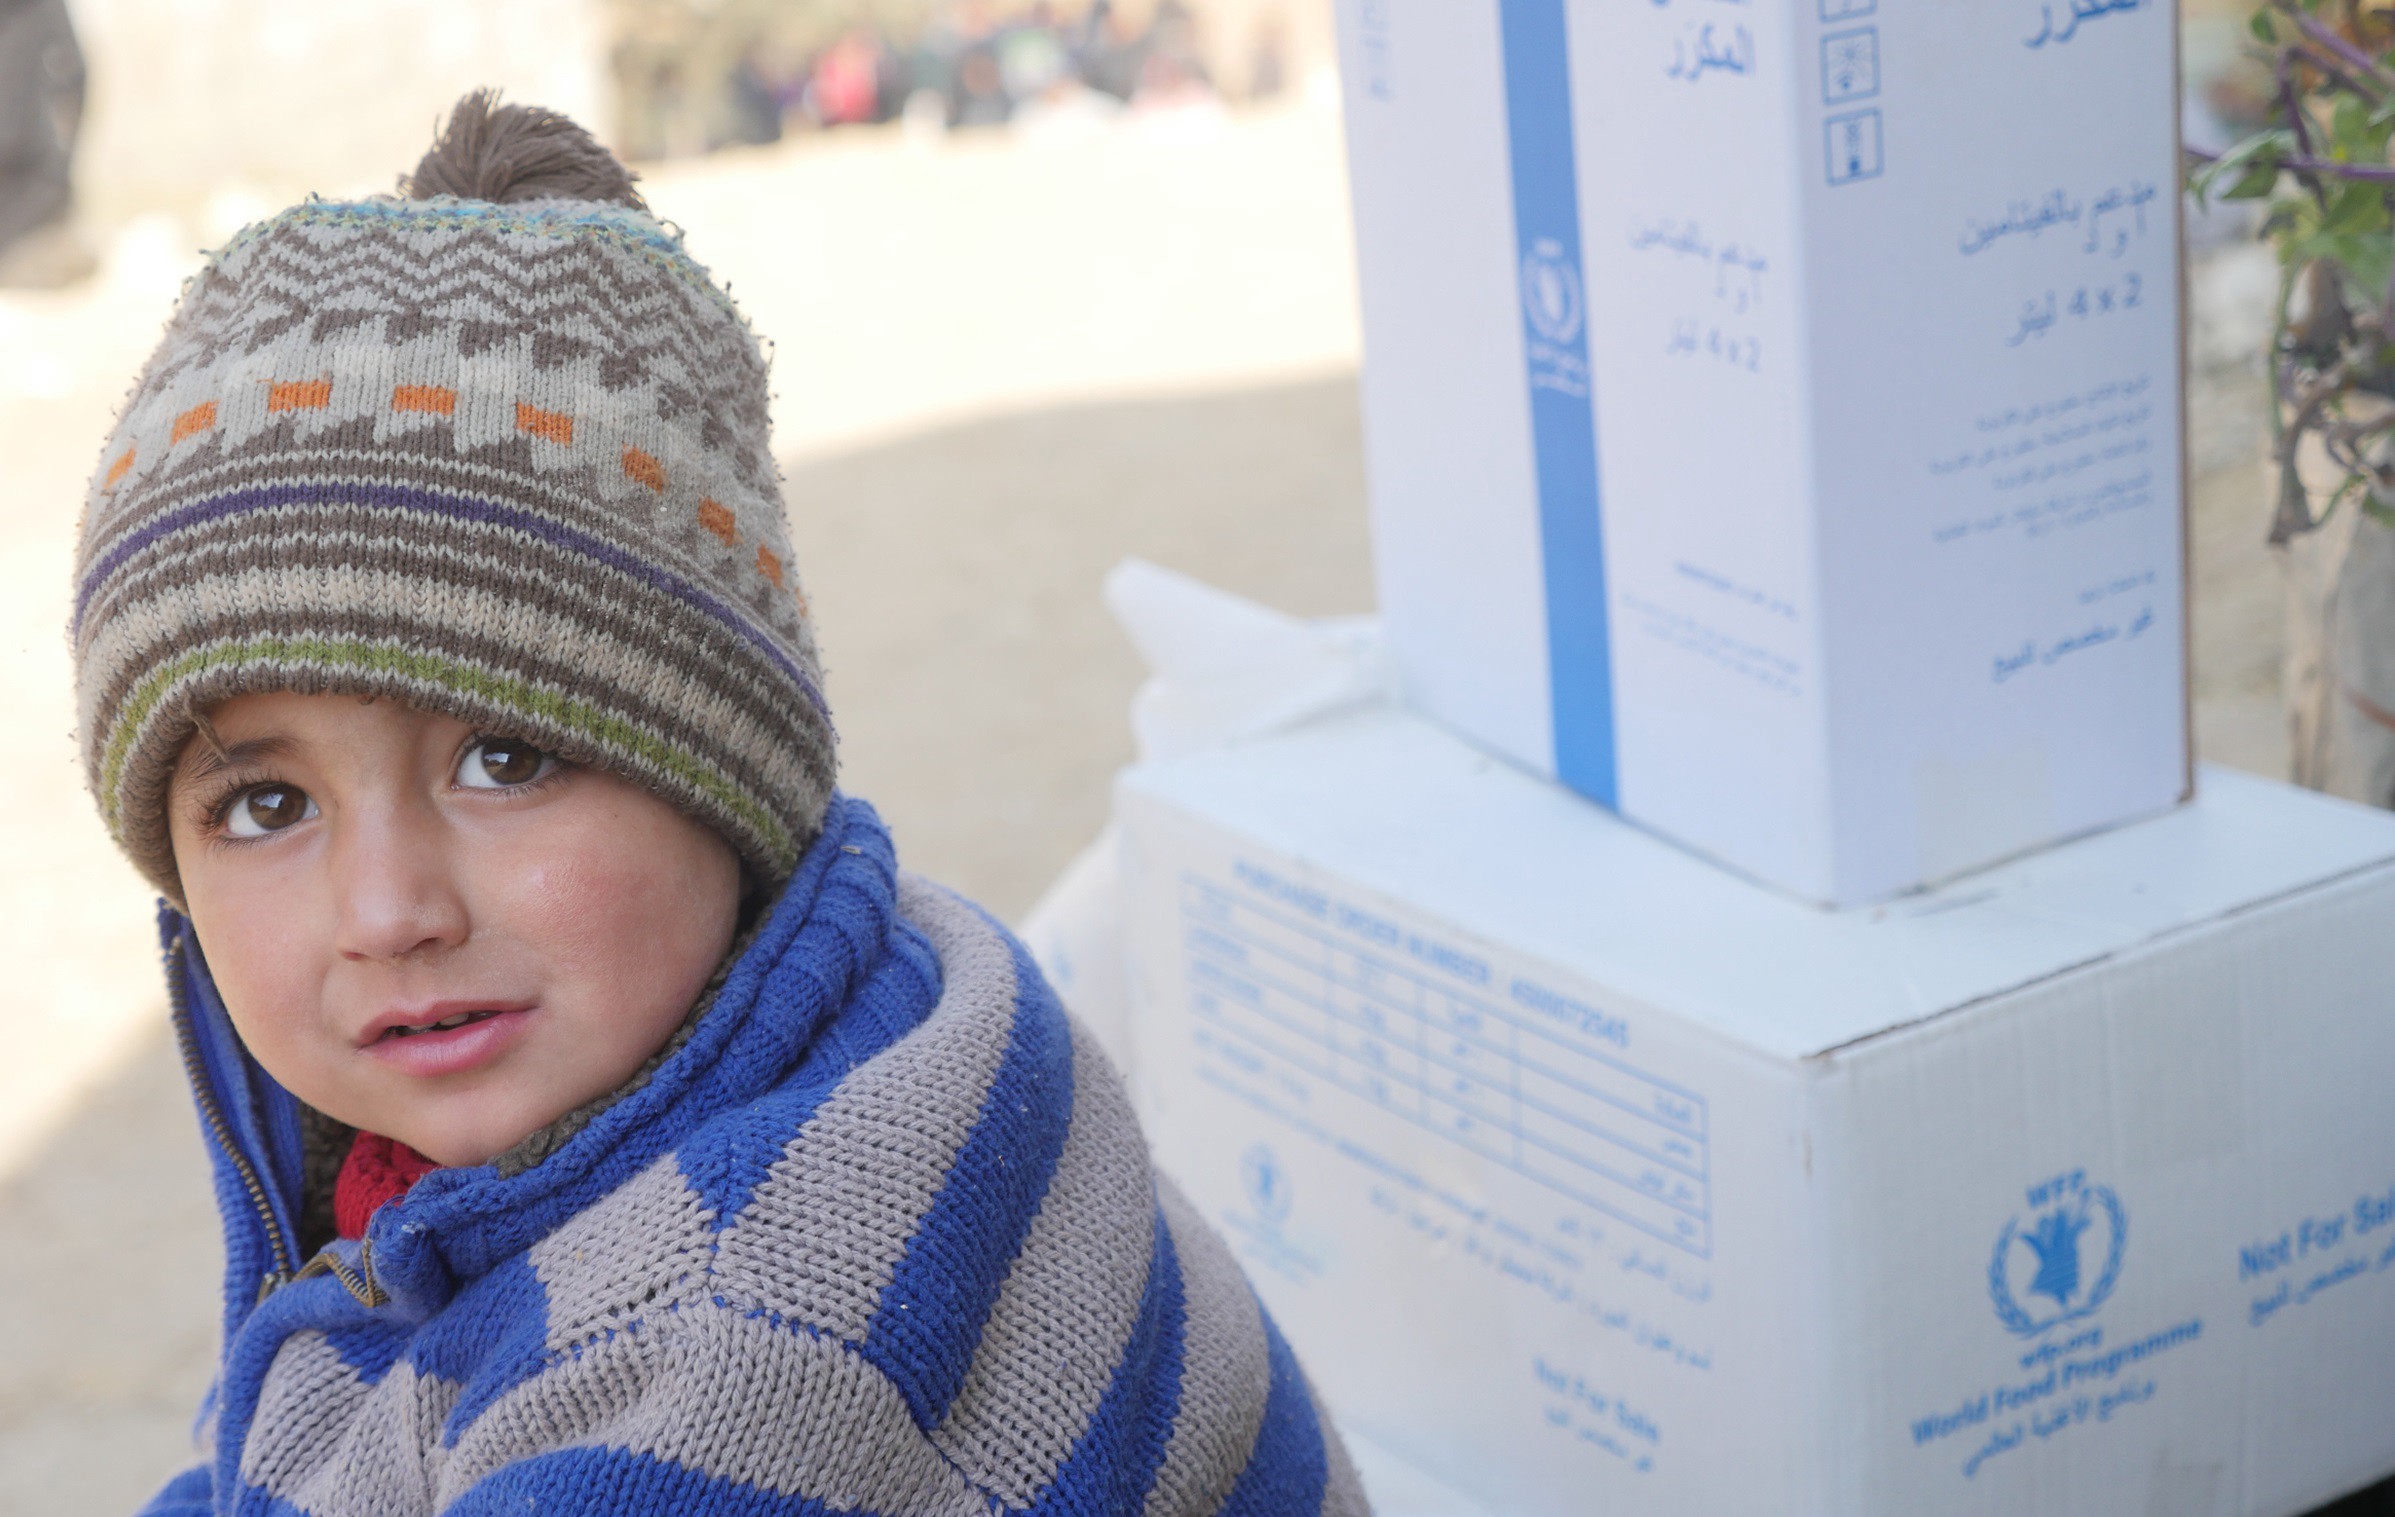 طفل نازح ينتظر عند نقطة توزيع المساعدات الغذائية في شمال سوريا. الصورة: برنامج الأغذية العالمي/جمعية ميرسي - الولايات المتحدة الأمريكية